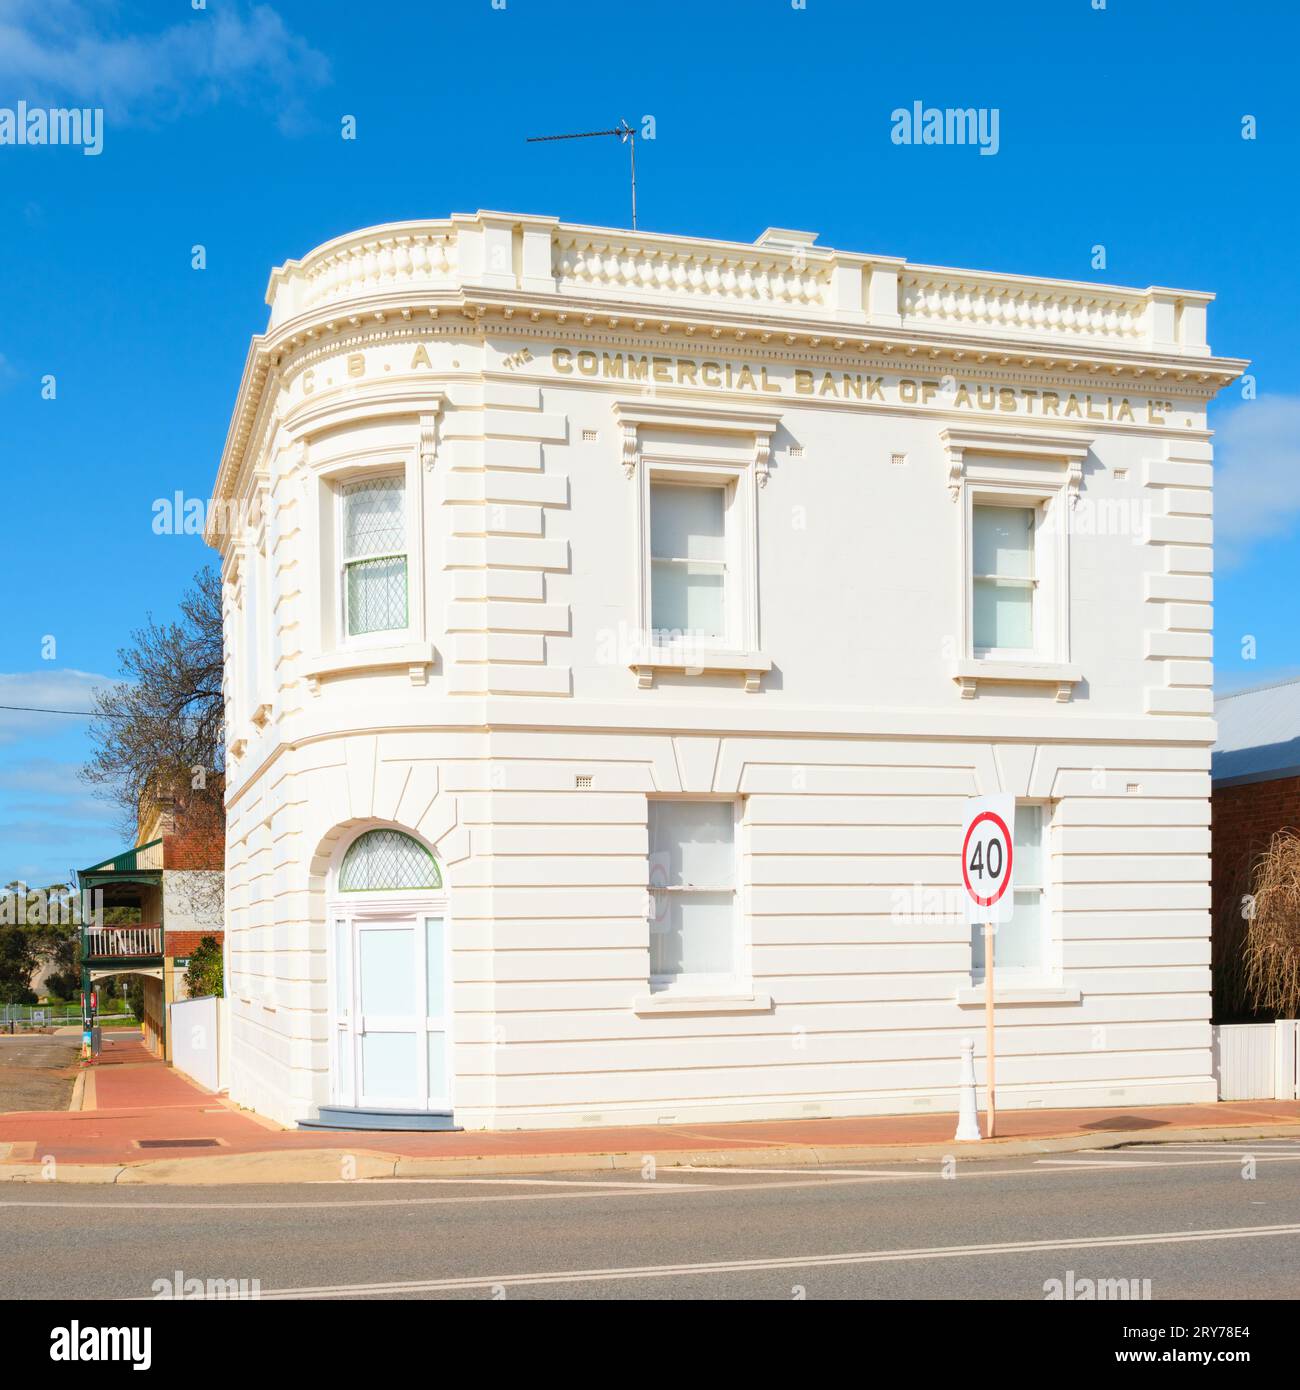 Ein quadratisches Bild des historischen Gebäudes der Commercial Bank of Australia in der Wheatbelt-Stadt Pingelly, Western Australia. Stockfoto